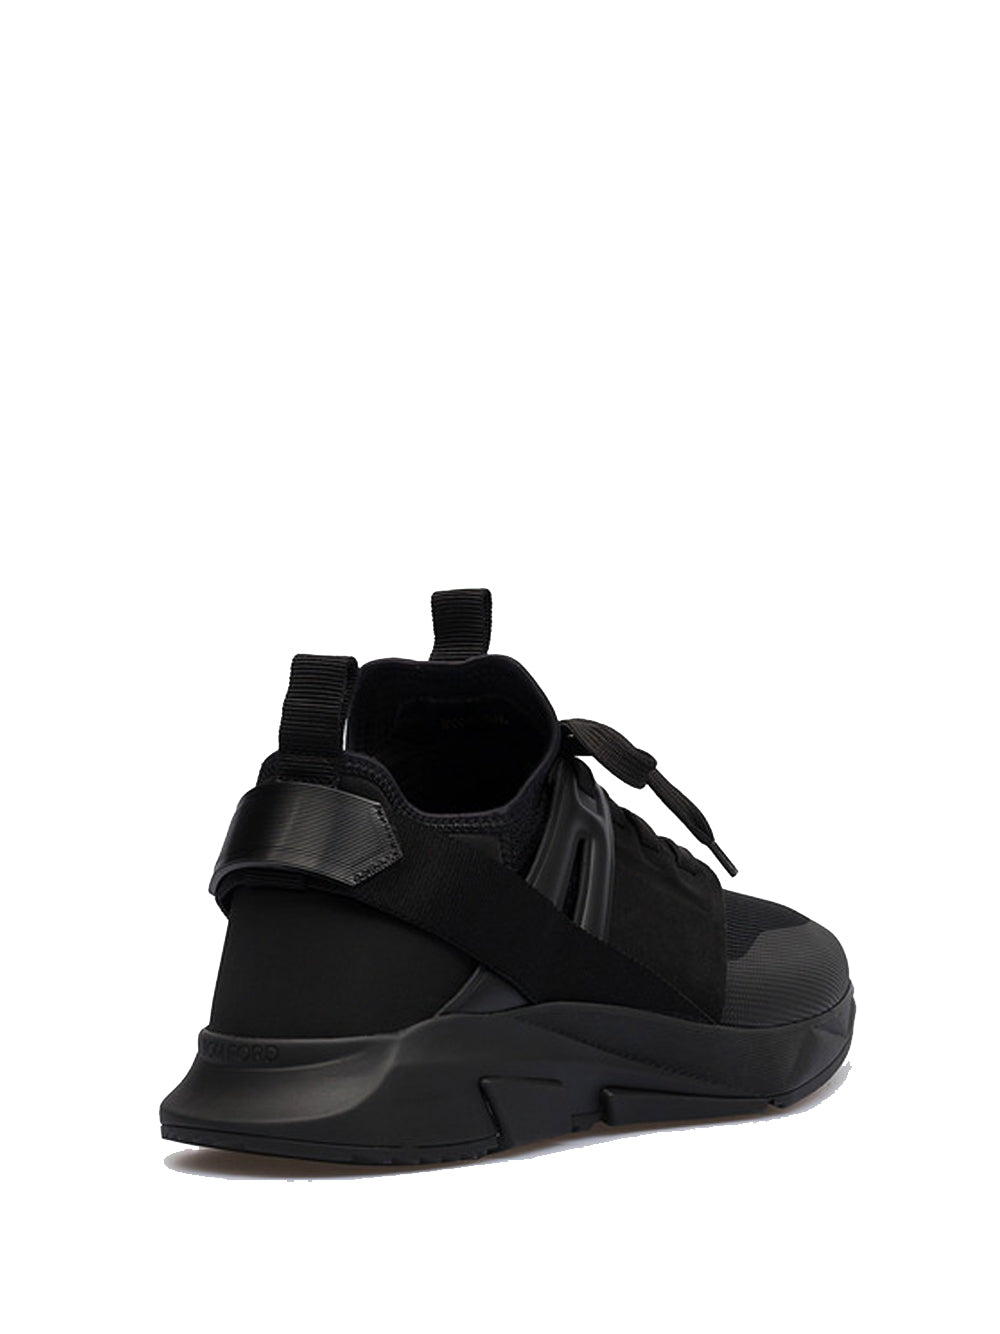 TOM FORD Jago Sneakers Black/Black - MAISONDEFASHION.COM